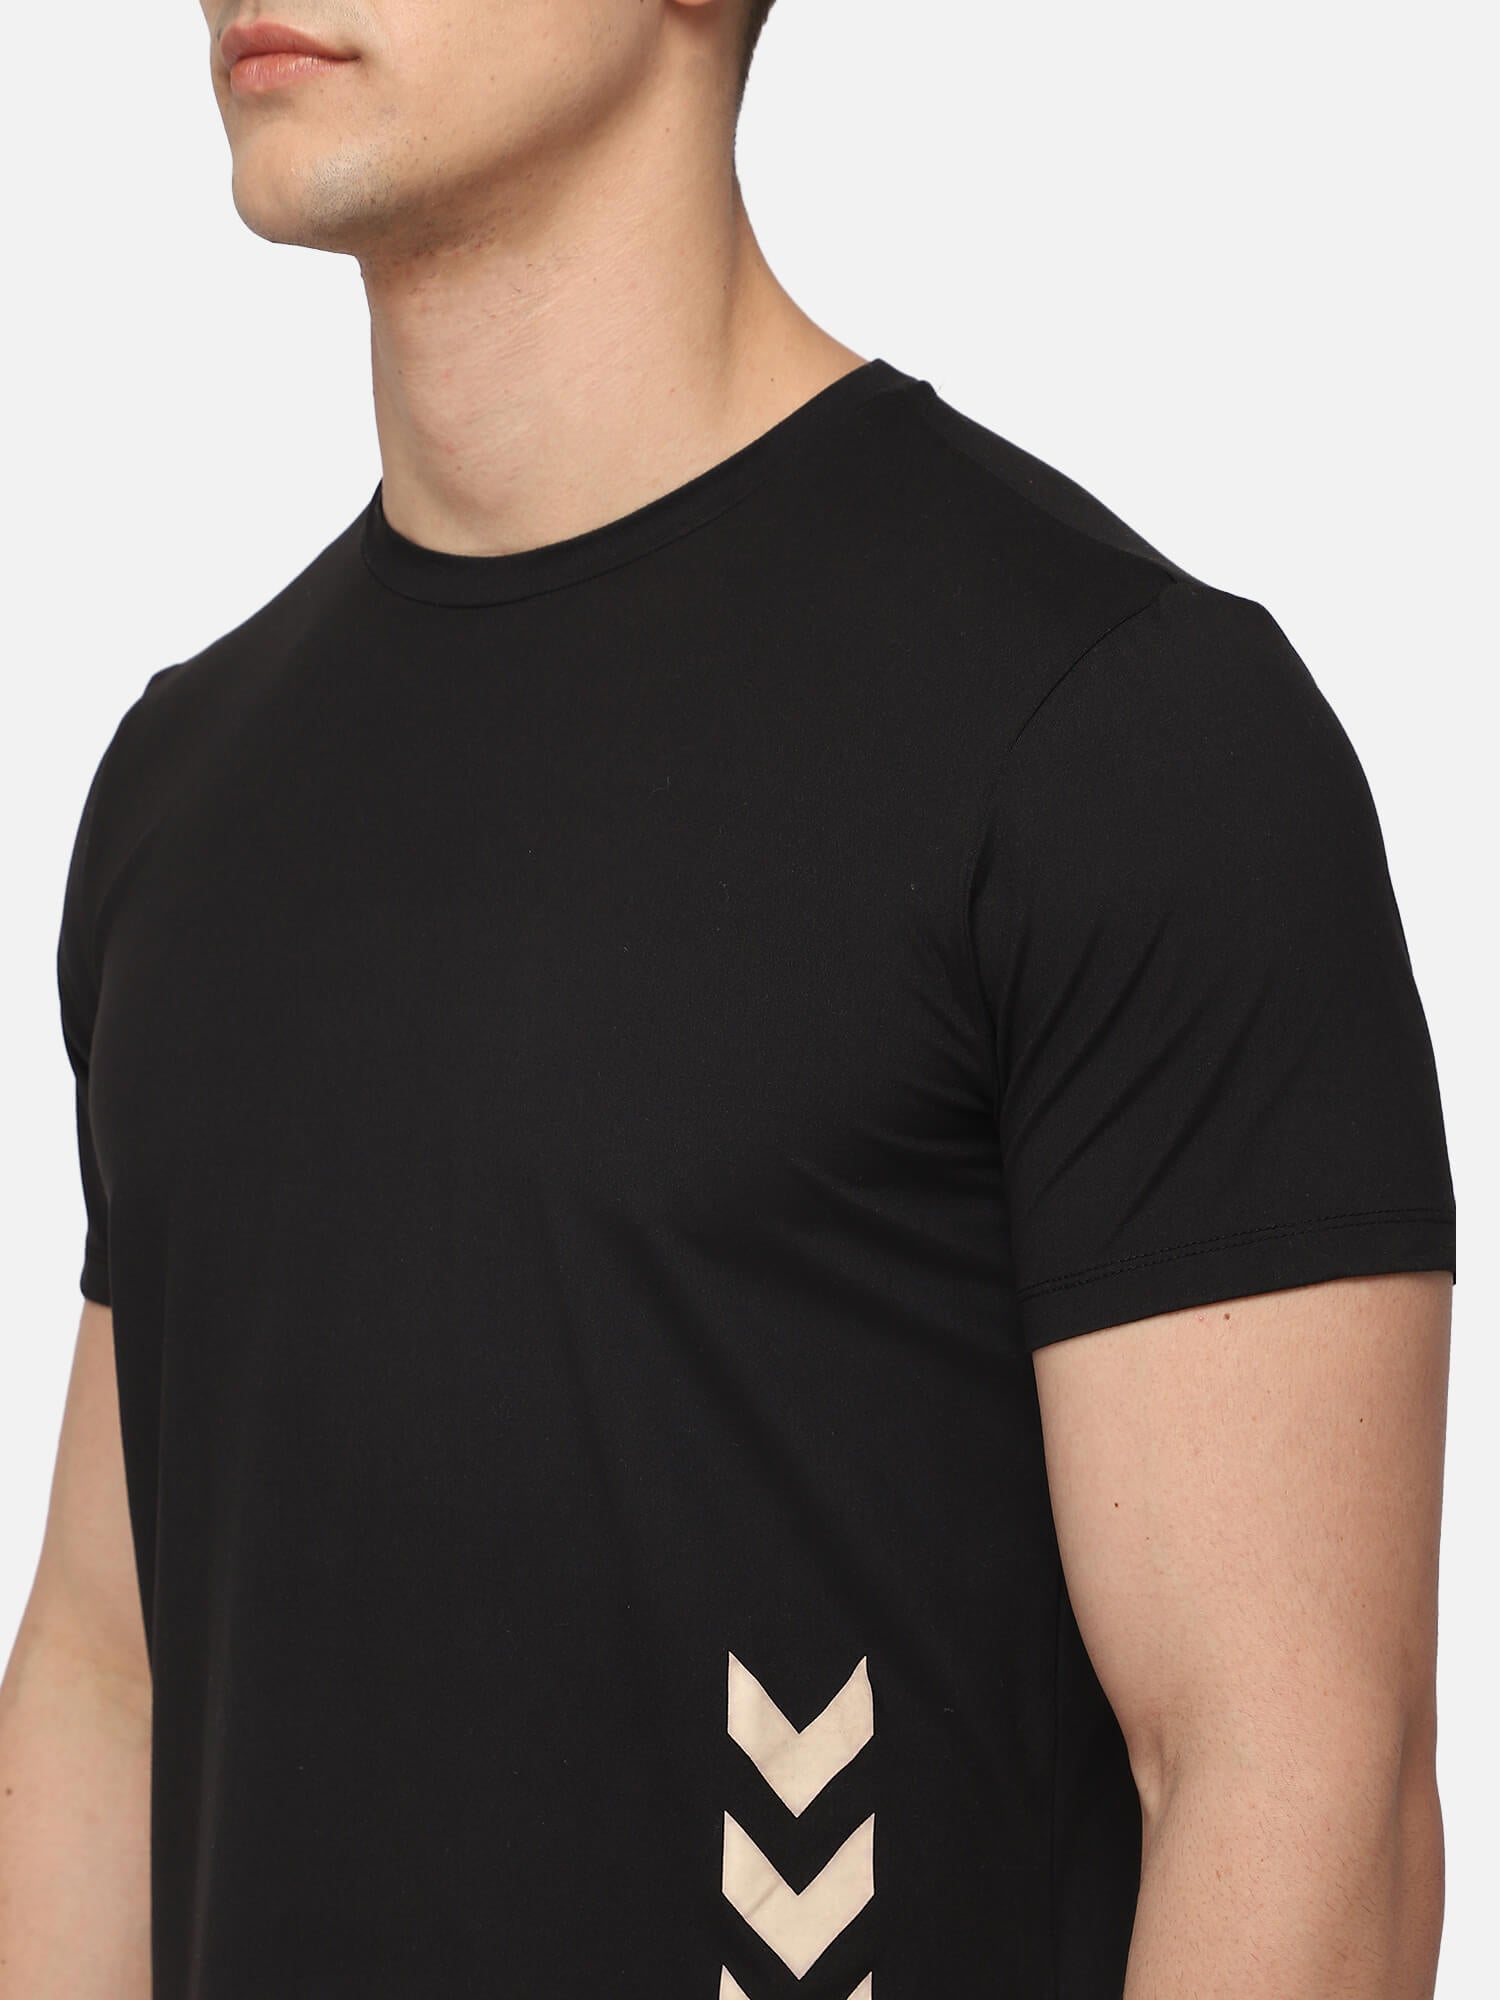 Marley Black T-Shirts for Men